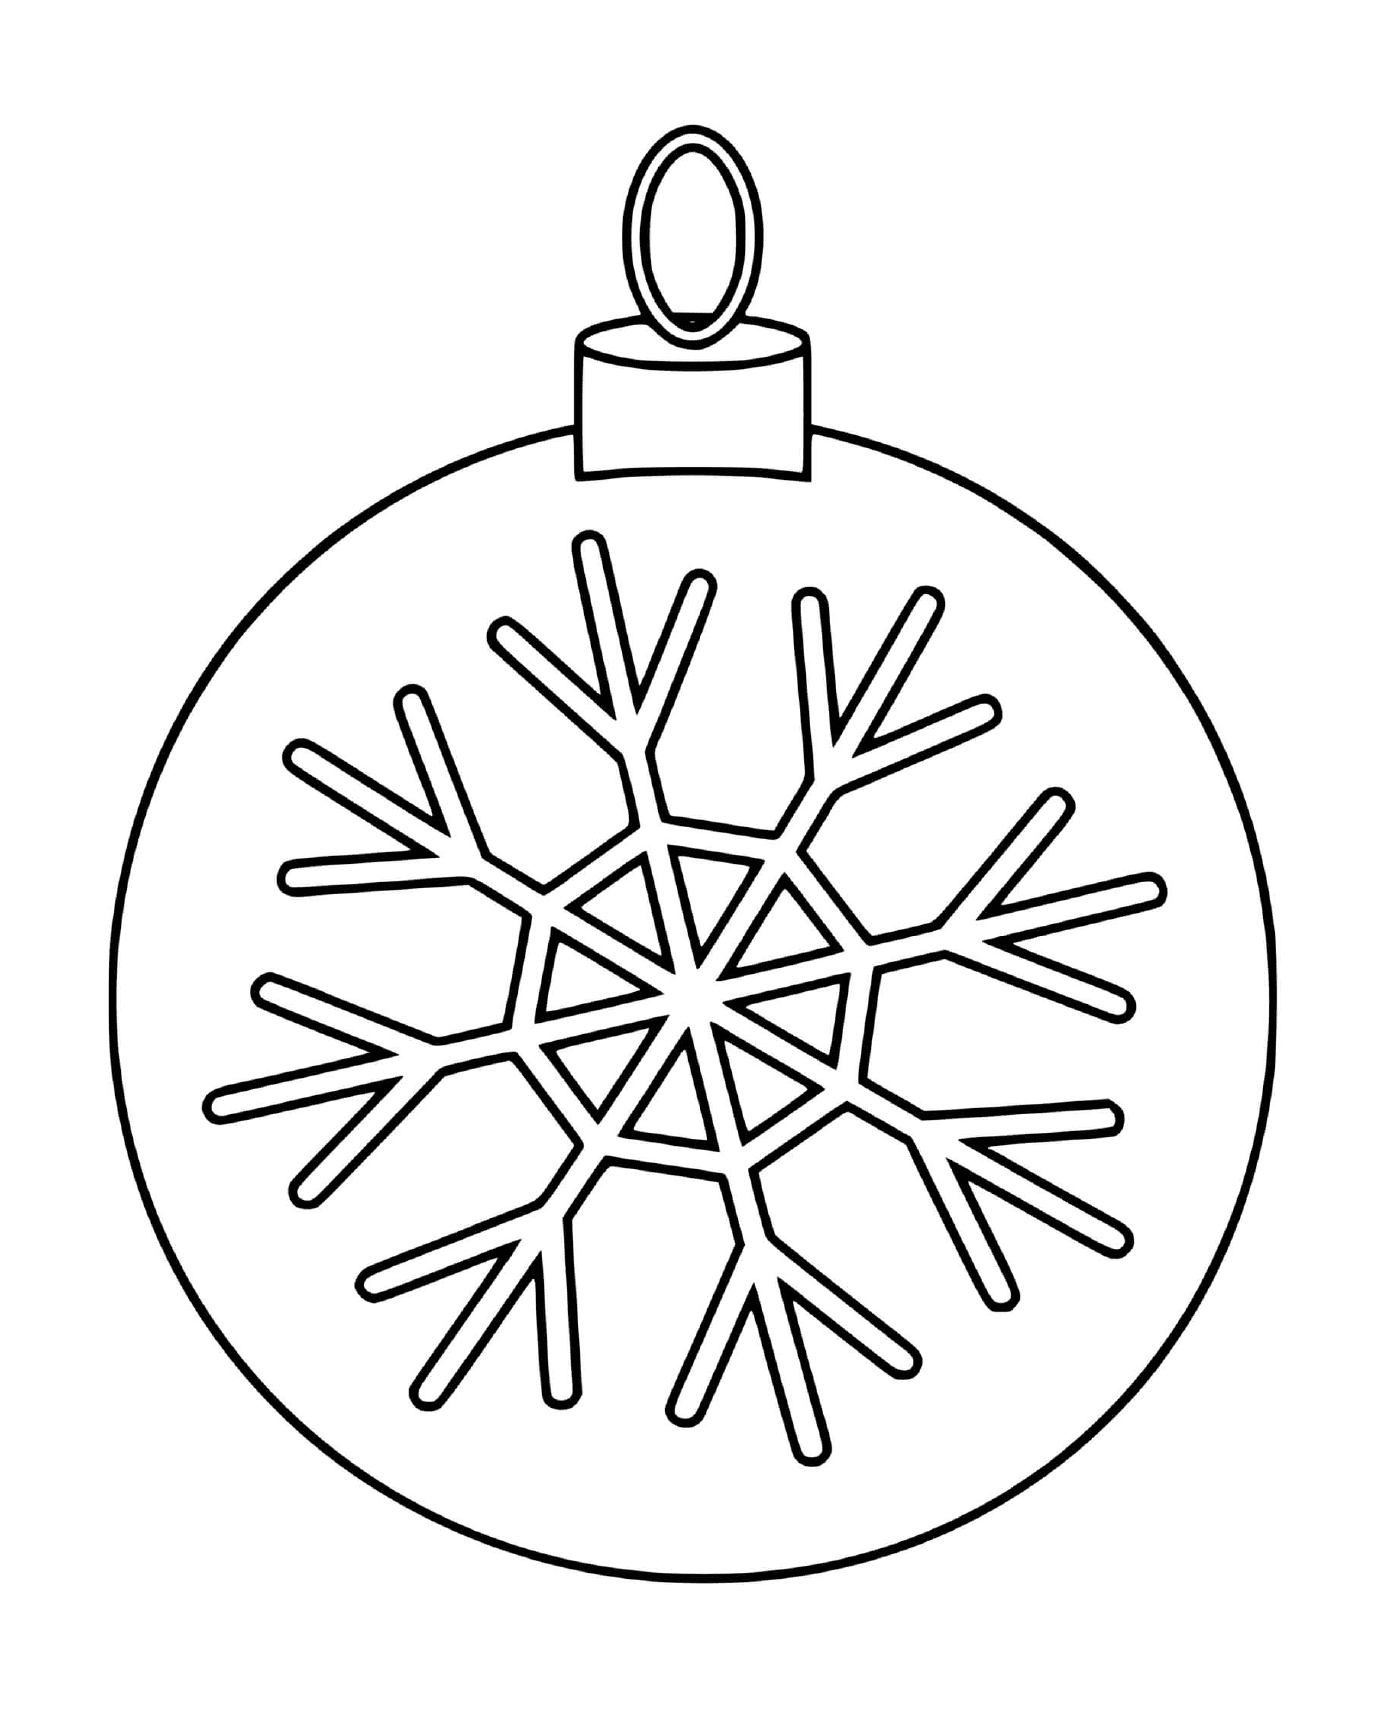  Ein Weihnachtsball mit einer Schneeflocke für einen Baum 